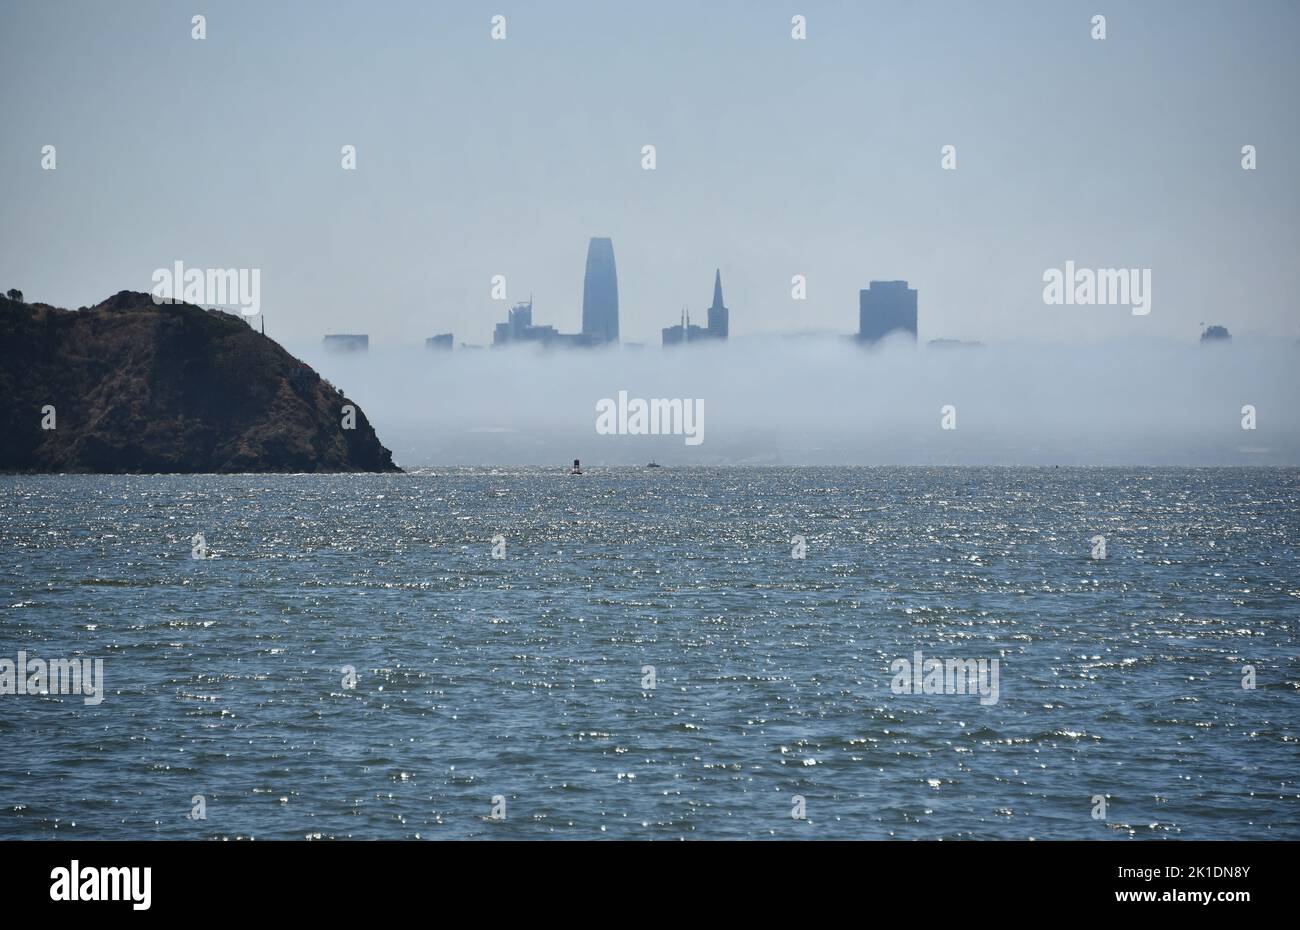 Panorama della città di San Francisco, California splendidamente coperta dalla nebbia. Ripresa dall'altra parte della baia, con Angel Island in primo piano. Foto Stock